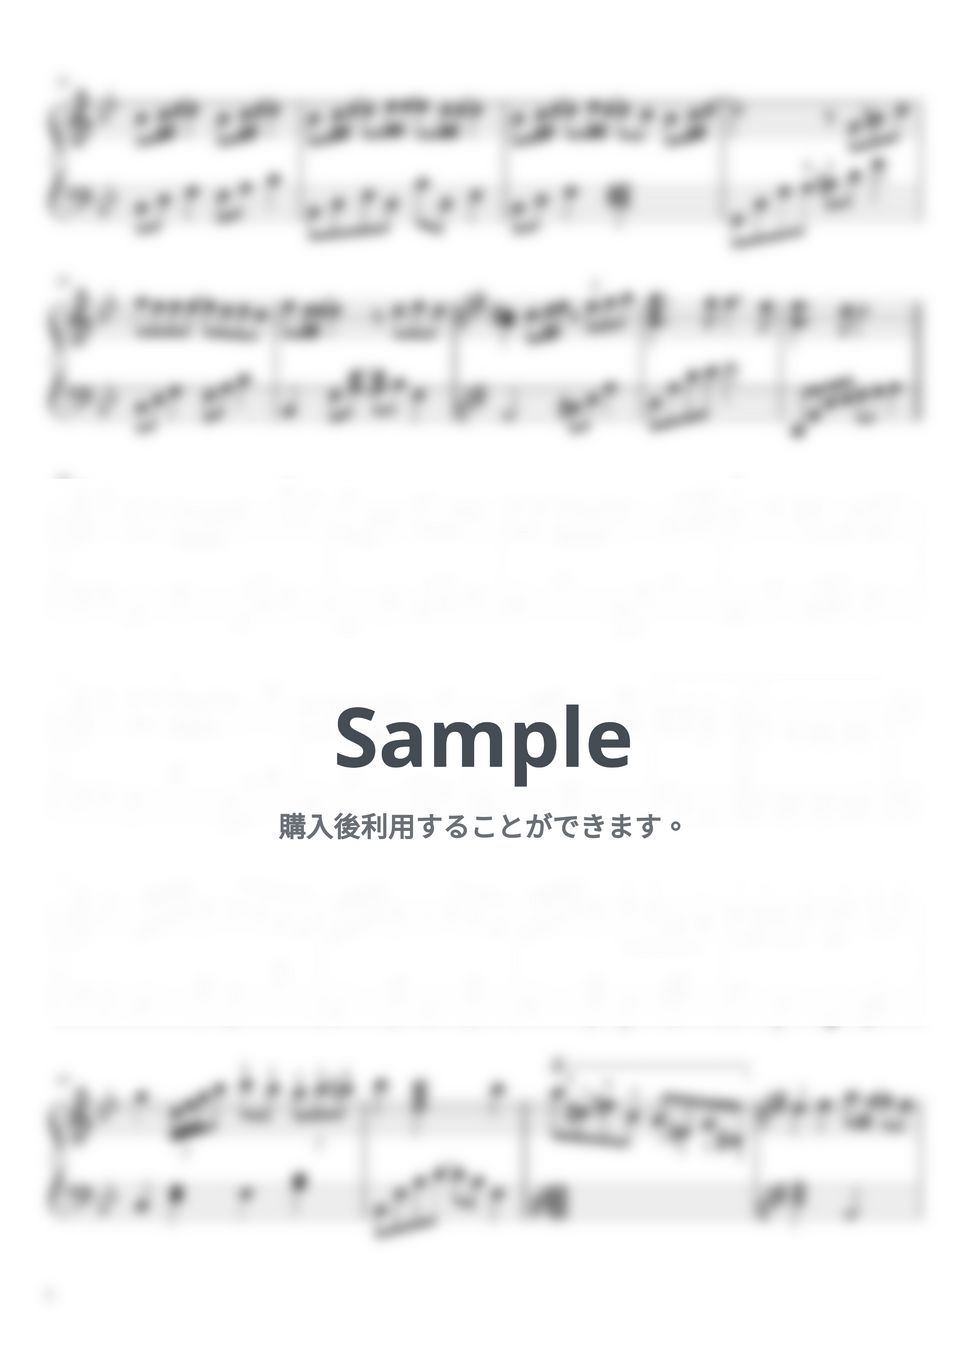 SEKAI NO OWARI - タイムマシン (ピアノソロ) by harupi